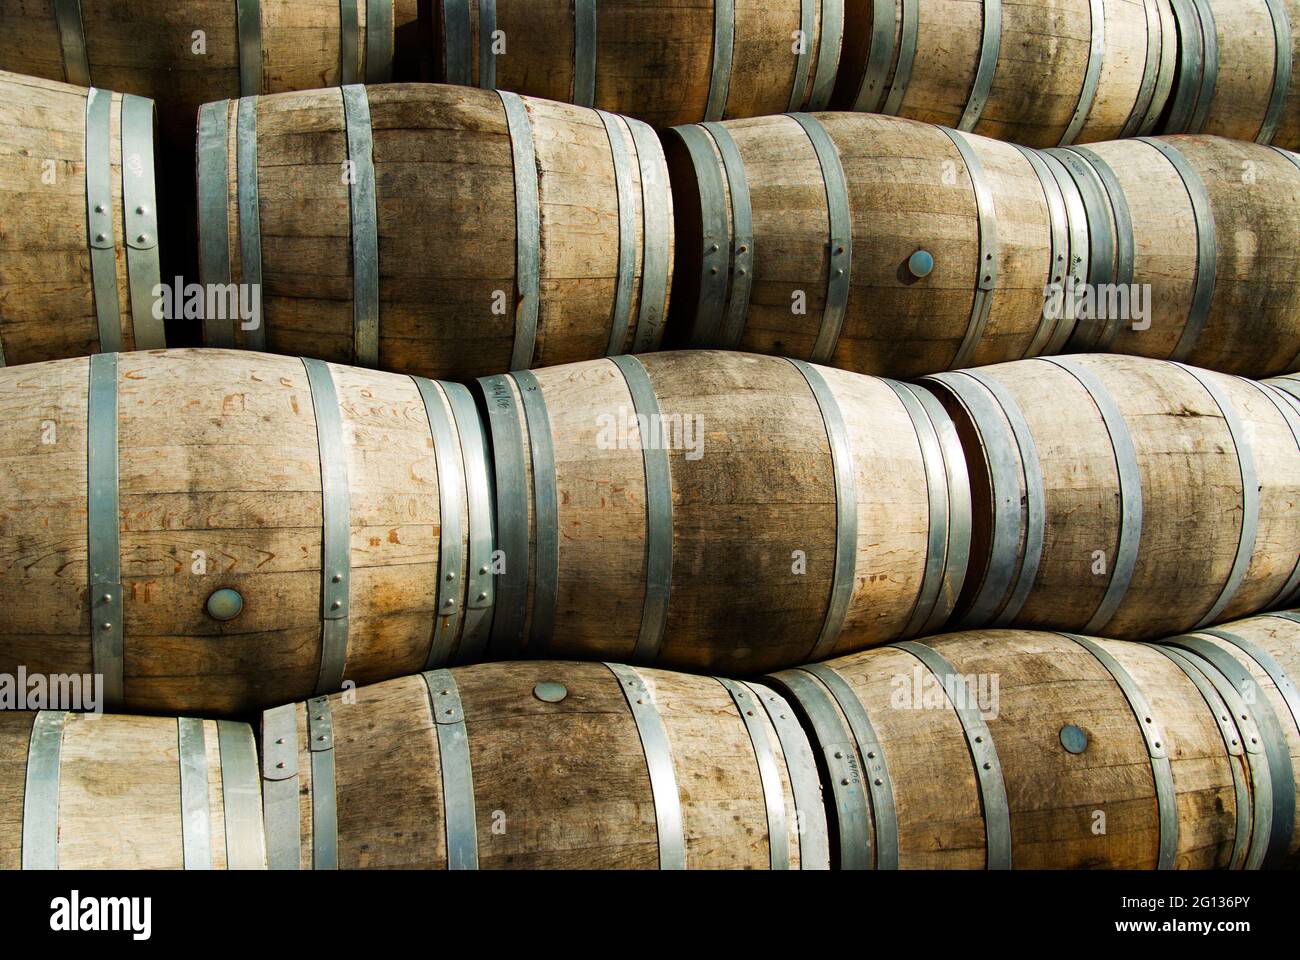 Botti di whisky vuote impilate in alto nella distilleria Bruichladdich sull'isola di Islay, Scozia. Foto Stock